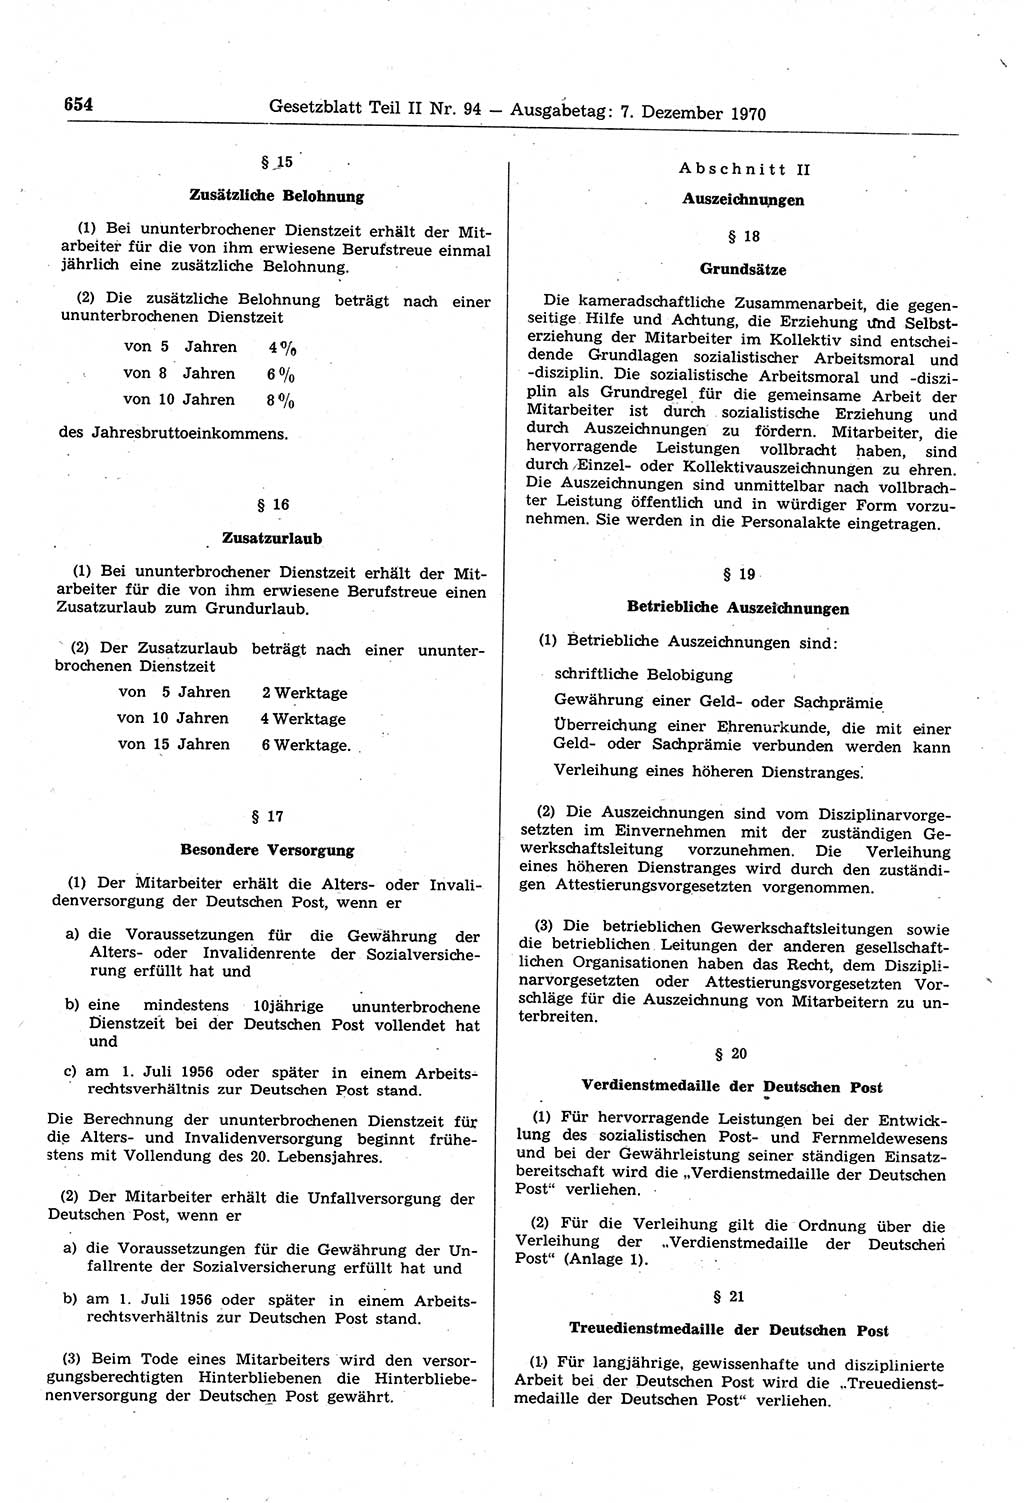 Gesetzblatt (GBl.) der Deutschen Demokratischen Republik (DDR) Teil ⅠⅠ 1970, Seite 654 (GBl. DDR ⅠⅠ 1970, S. 654)